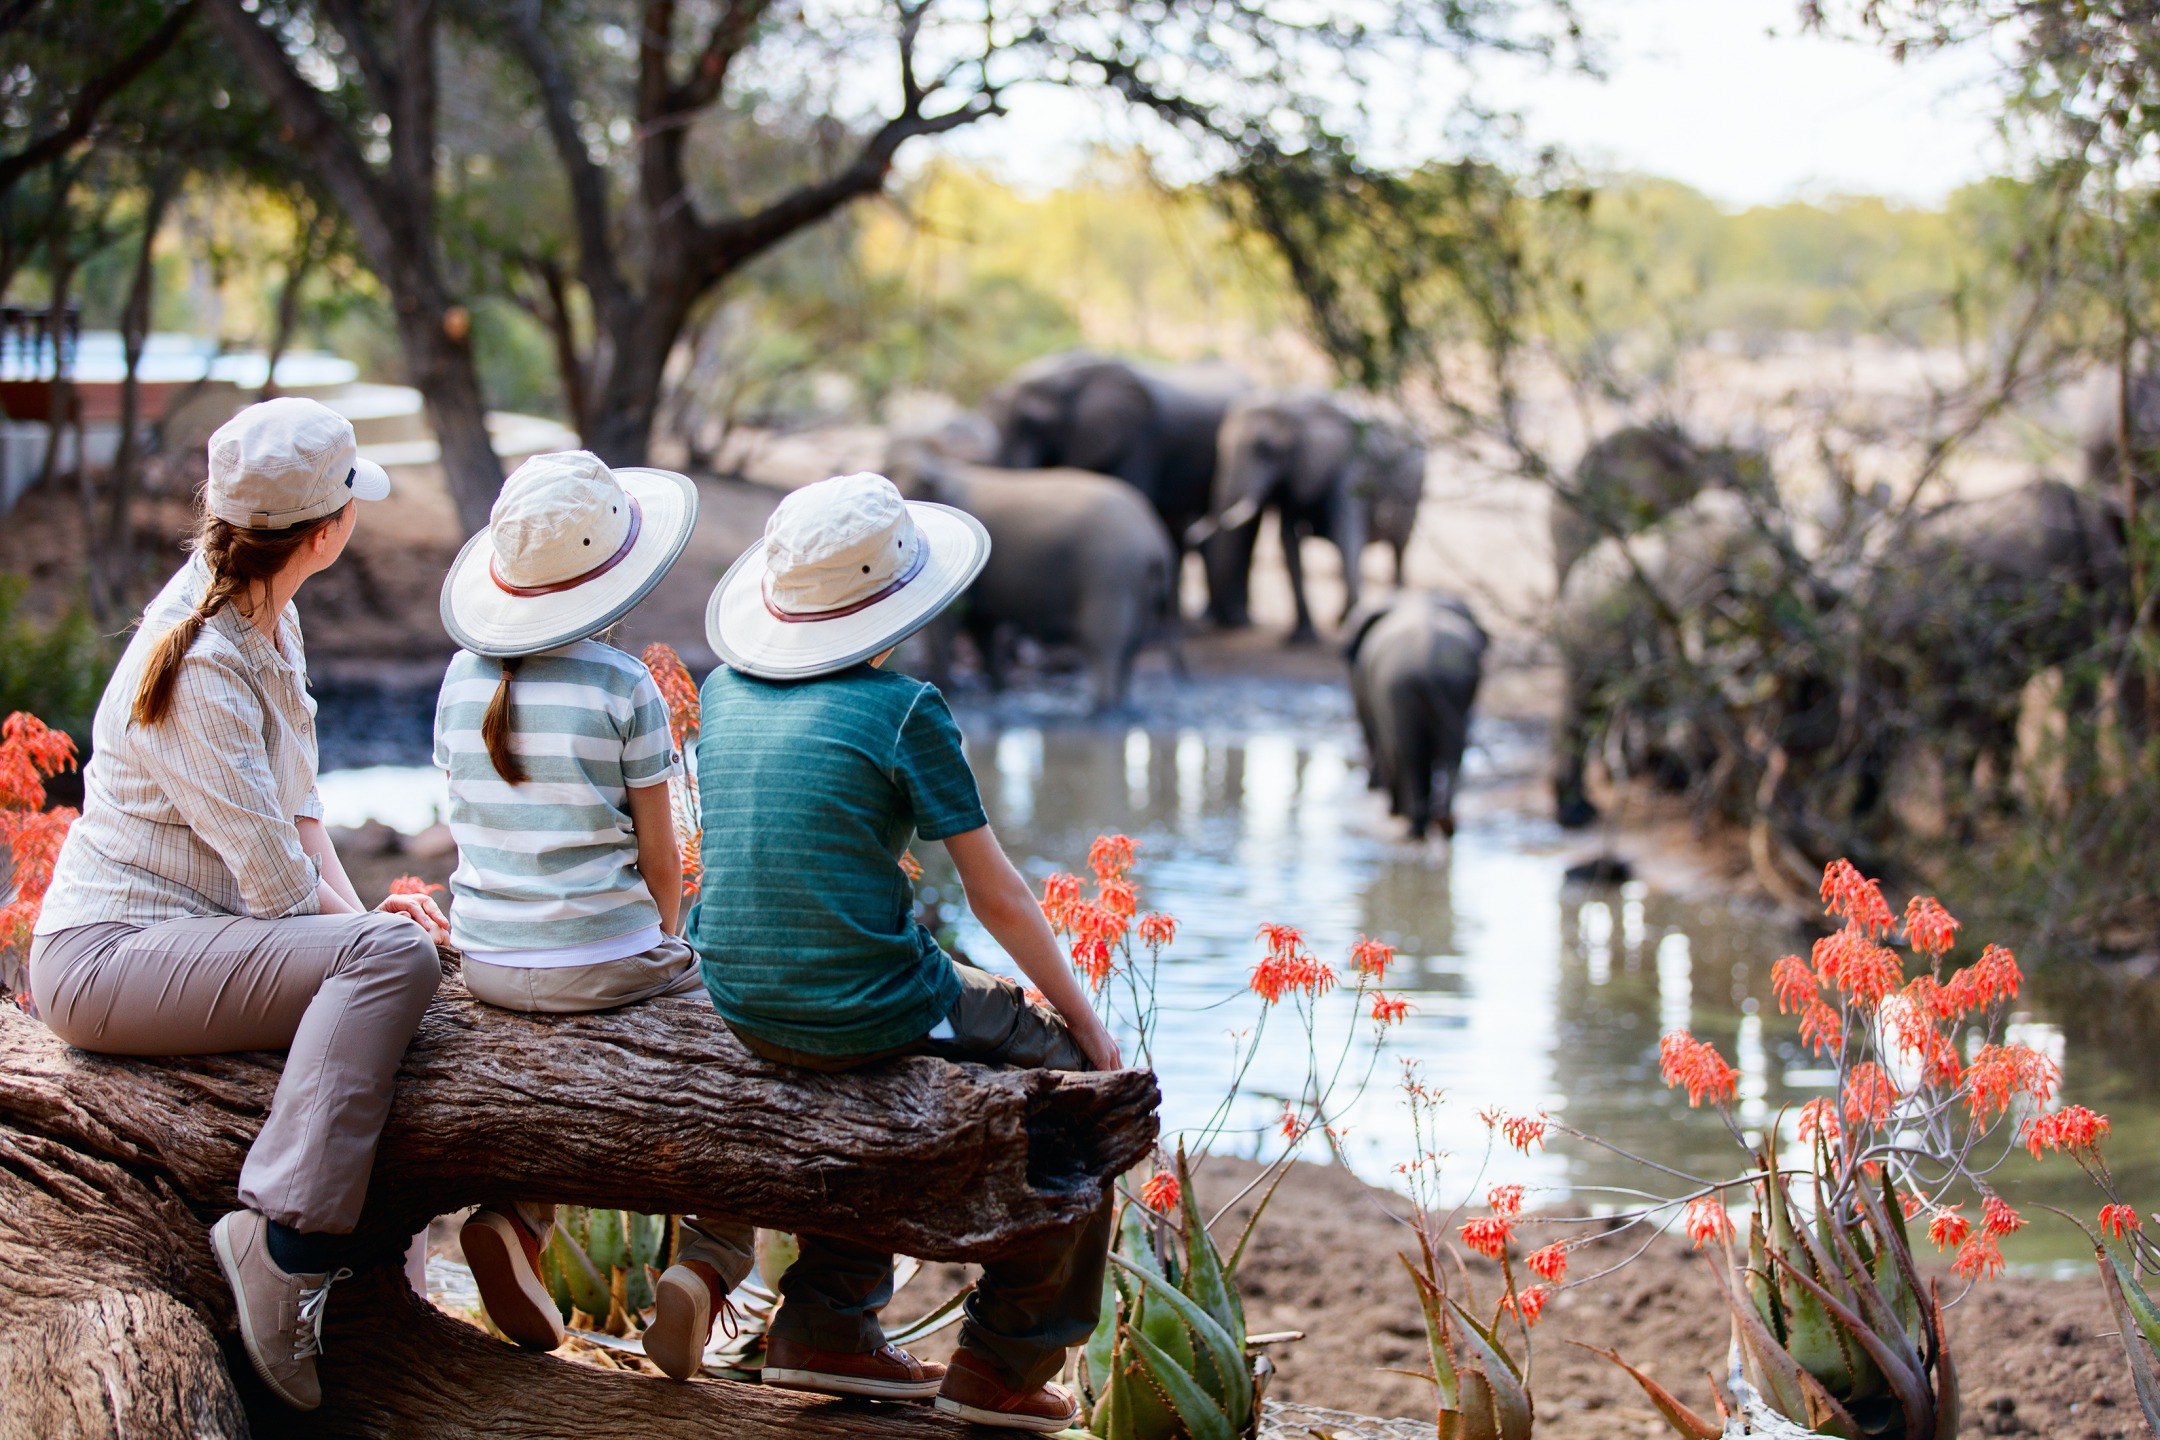 parc safari en afrique